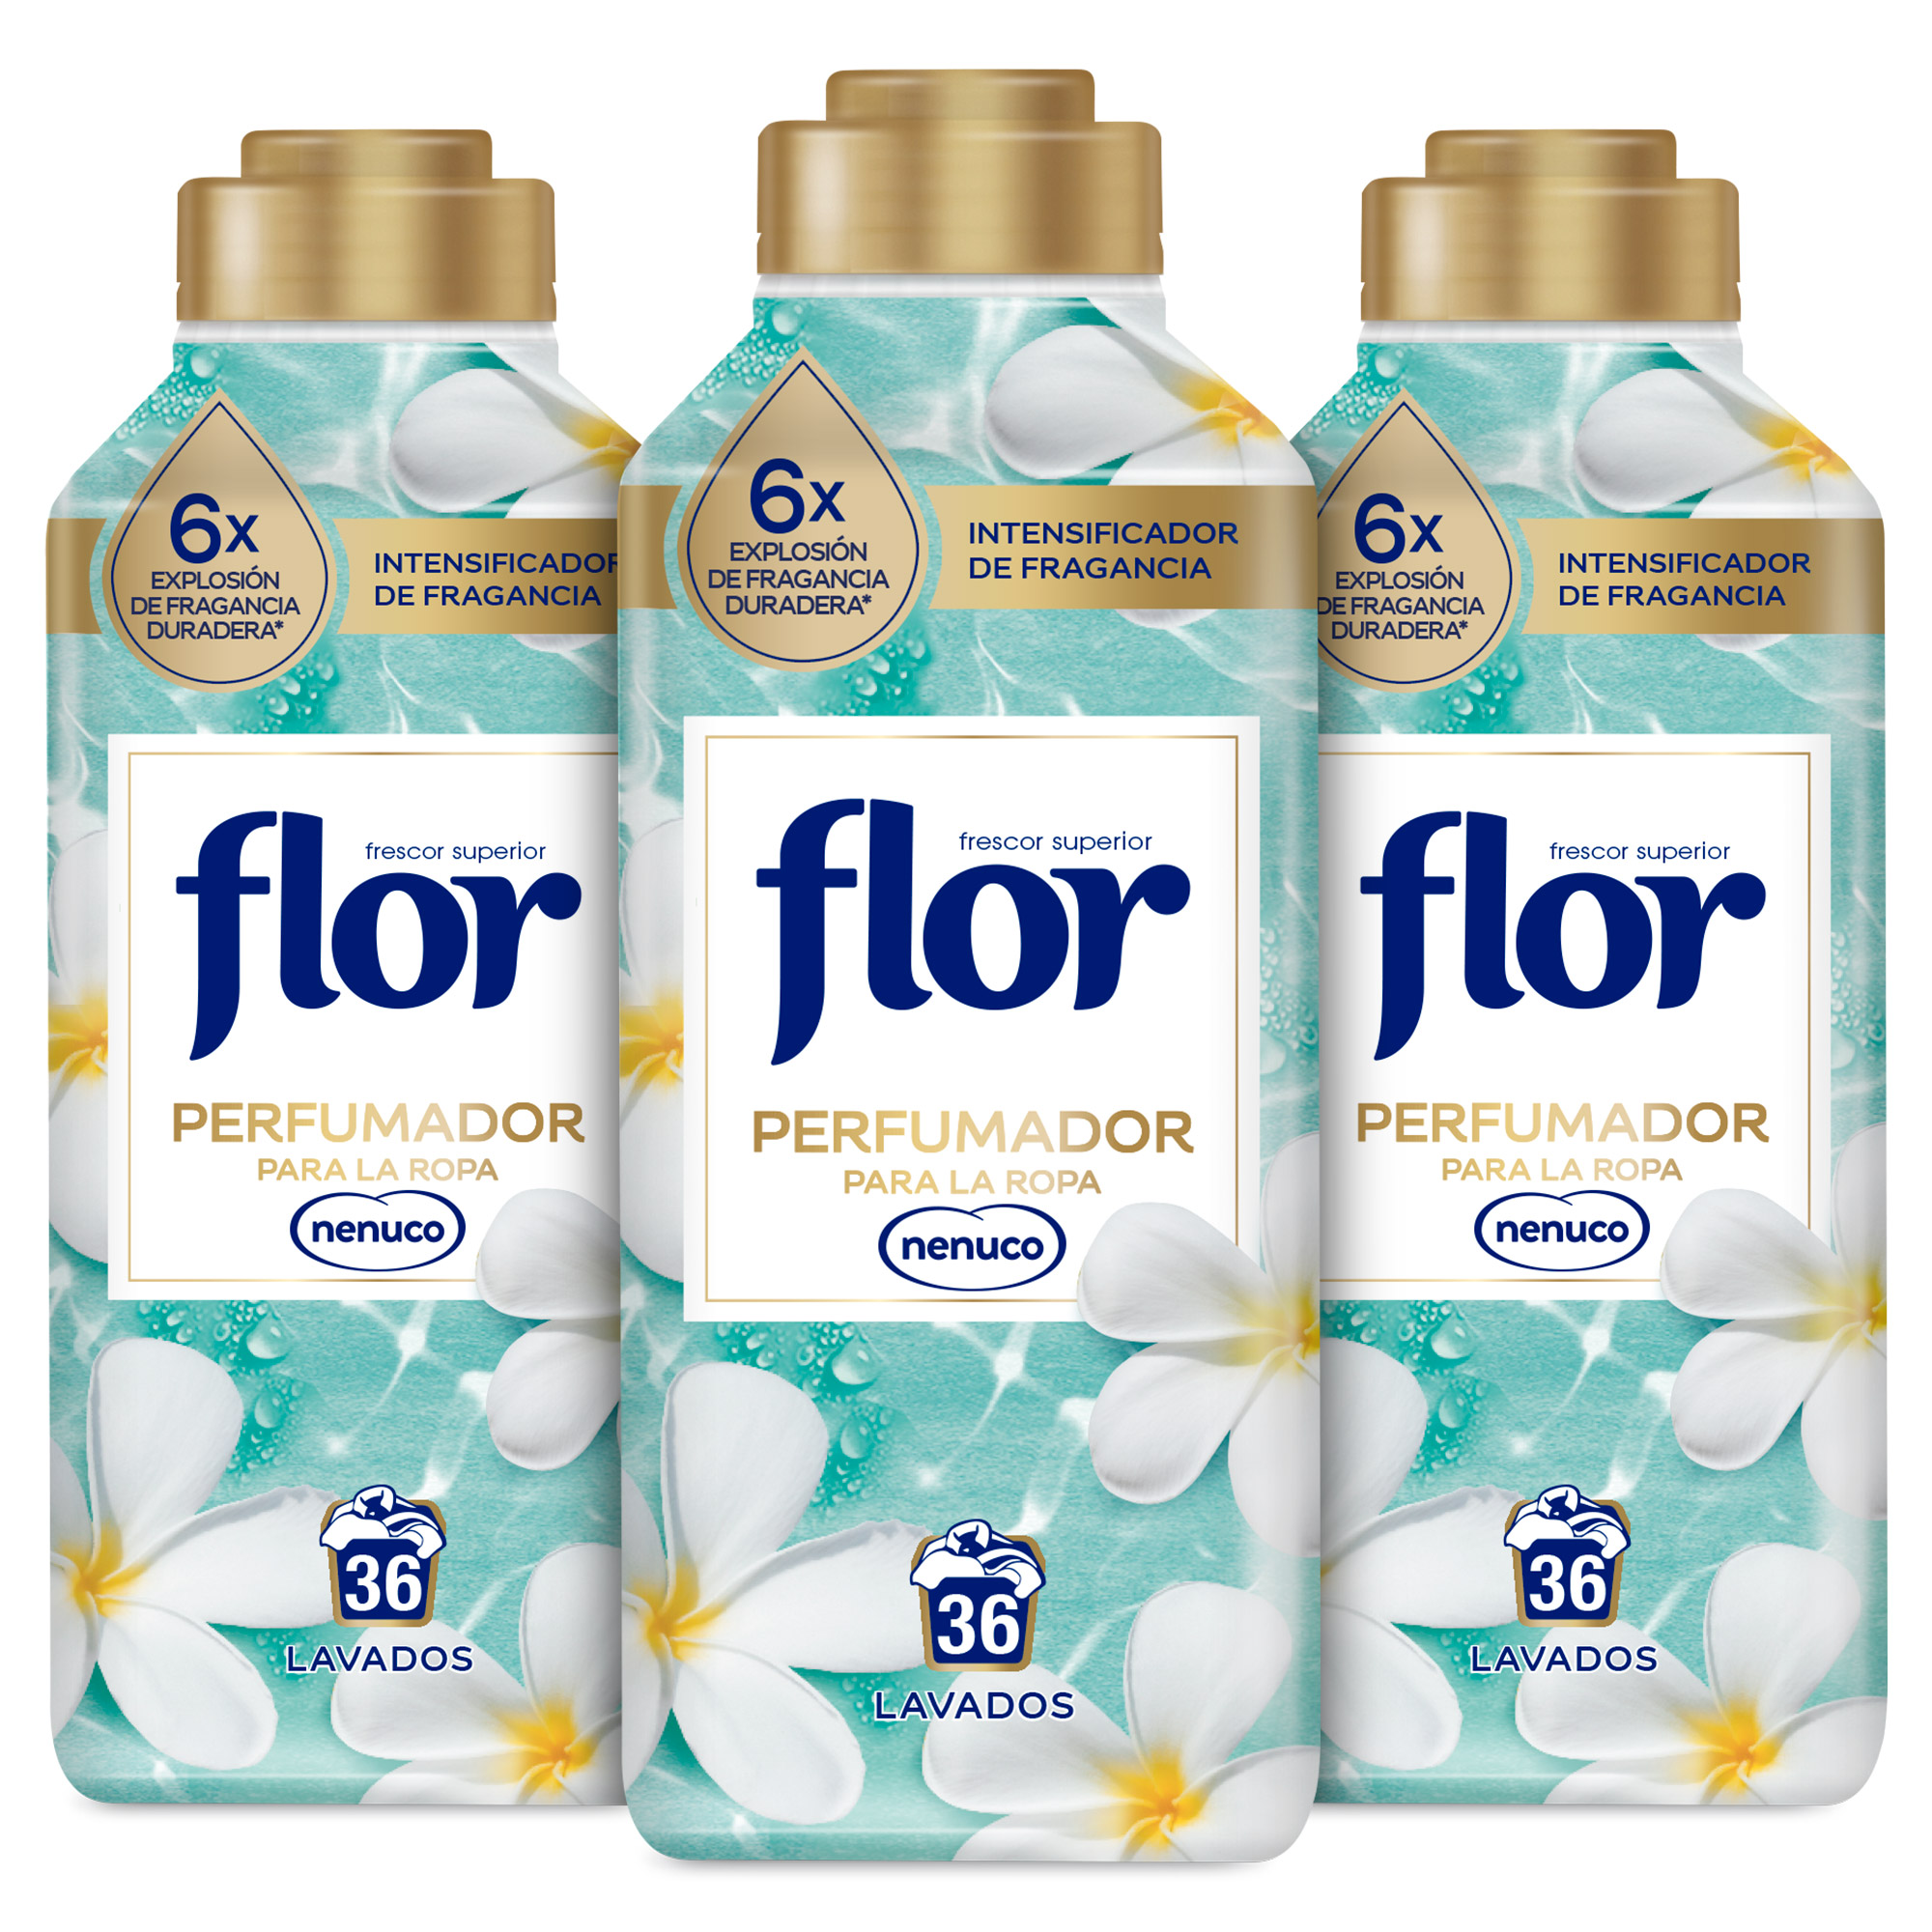 Flor - Flor Perfumador Para la Ropa Fragancia Nenuco 3x 720ml, Disolución Perfecta, Elegante